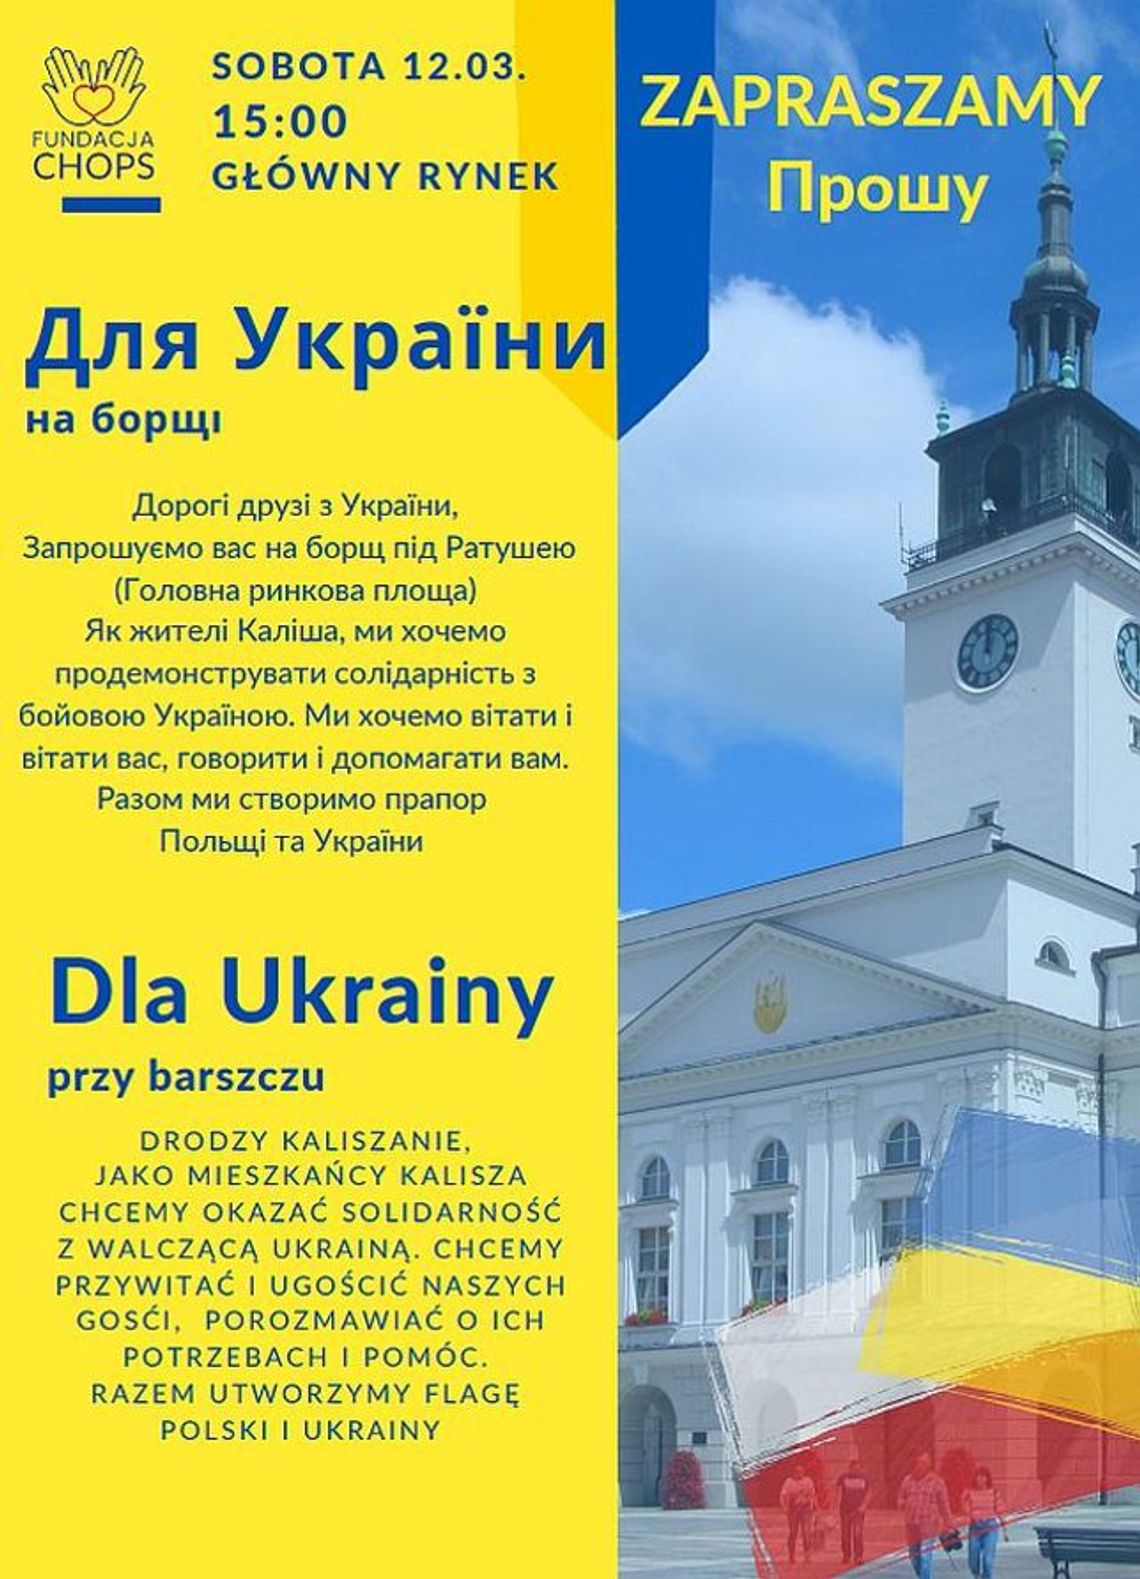 ,,Dla Ukrainy przy barszczu’’ – integracyjne spotkanie na Głównym Rynku